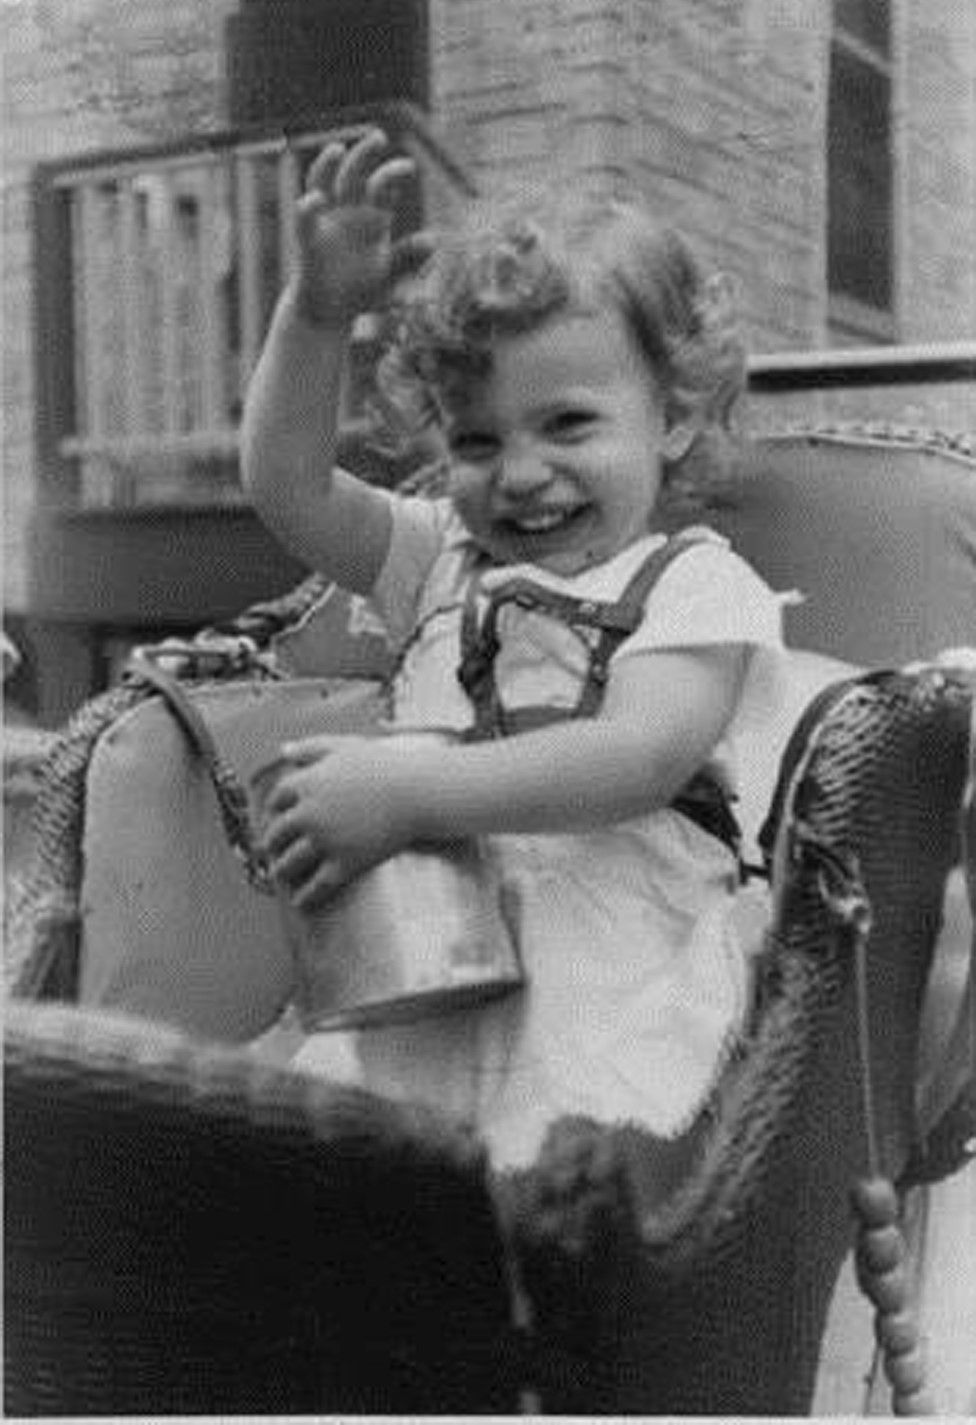 Judy Heumann as a young child